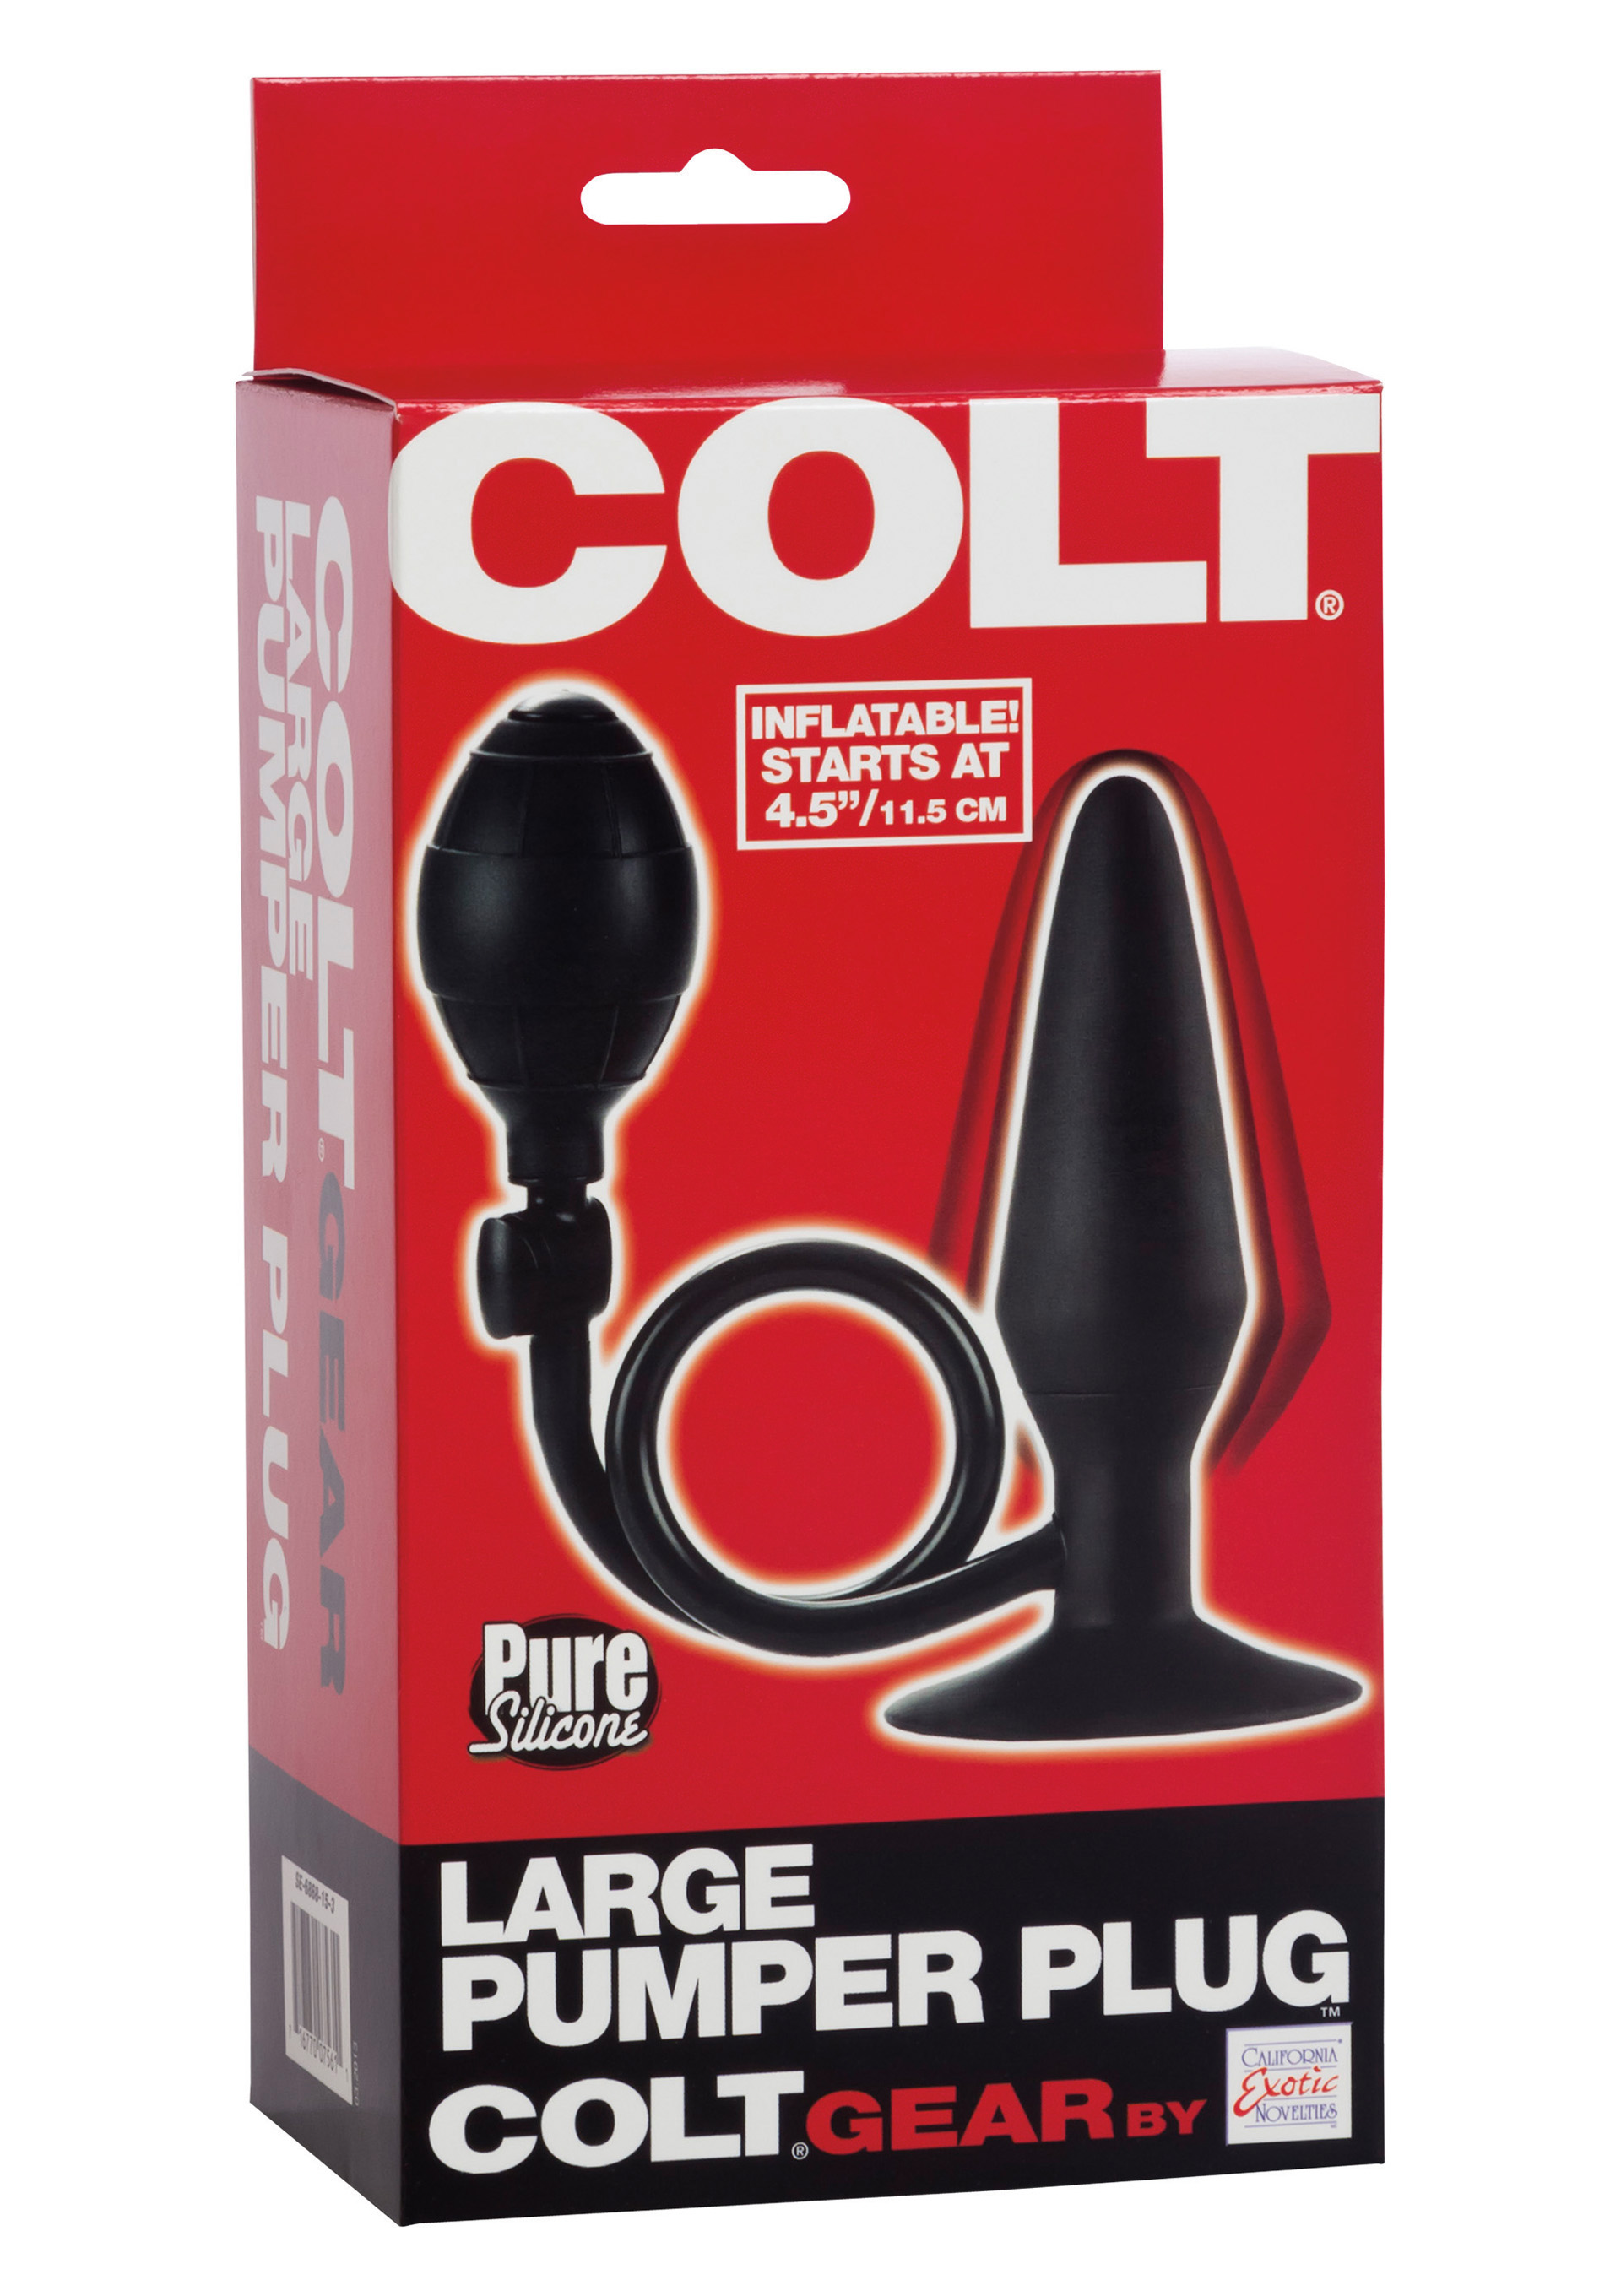 Colt Large Pumper Plug.